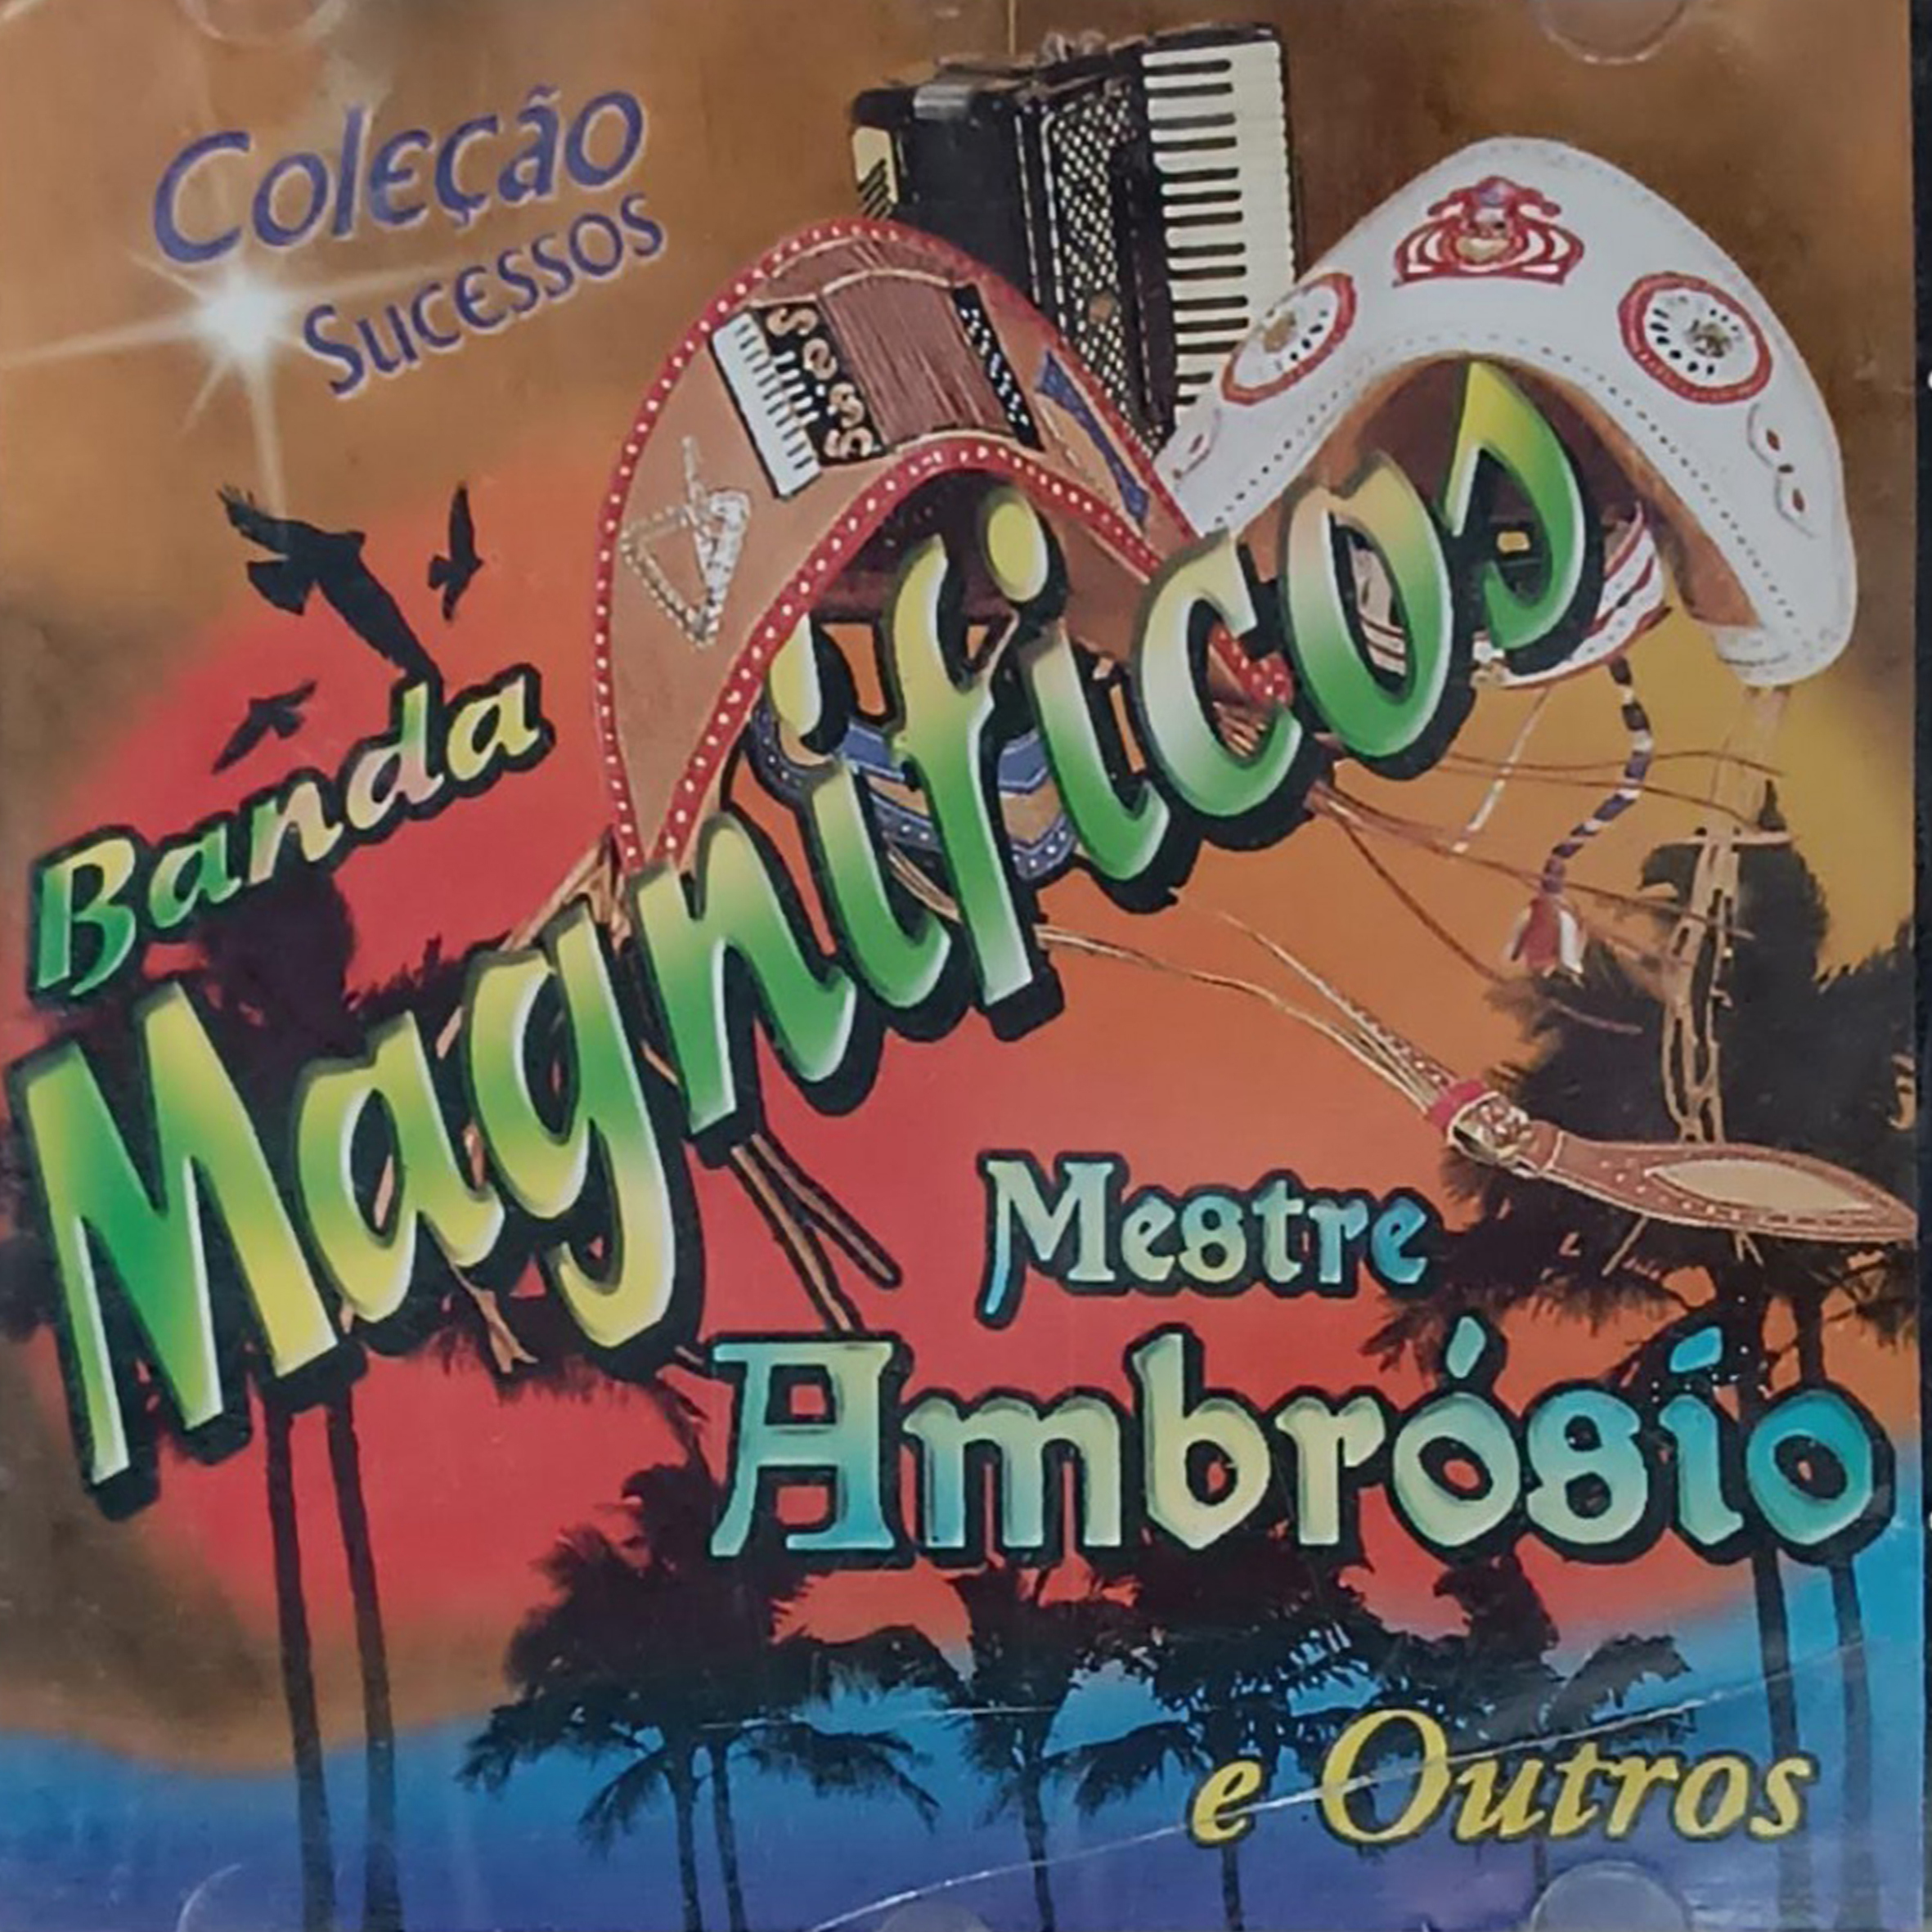 CD - Coleção sucessos - Banda Magnificos